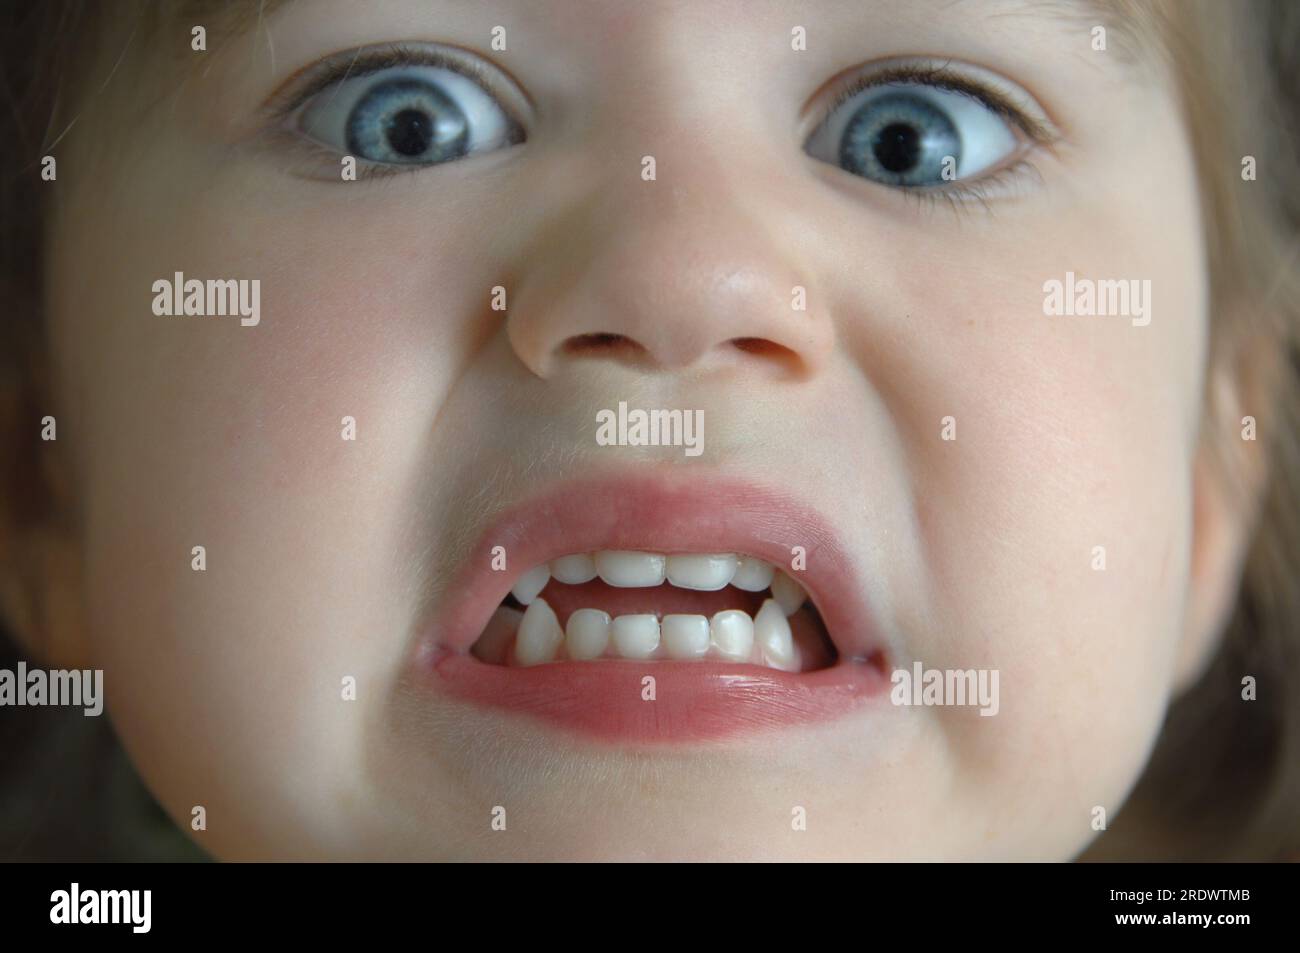 El primer plano extremo de la cara de la niña muestra su expresión aterrorizada. Sus ojos están abultados y sus dientes están apretados. Foto de stock